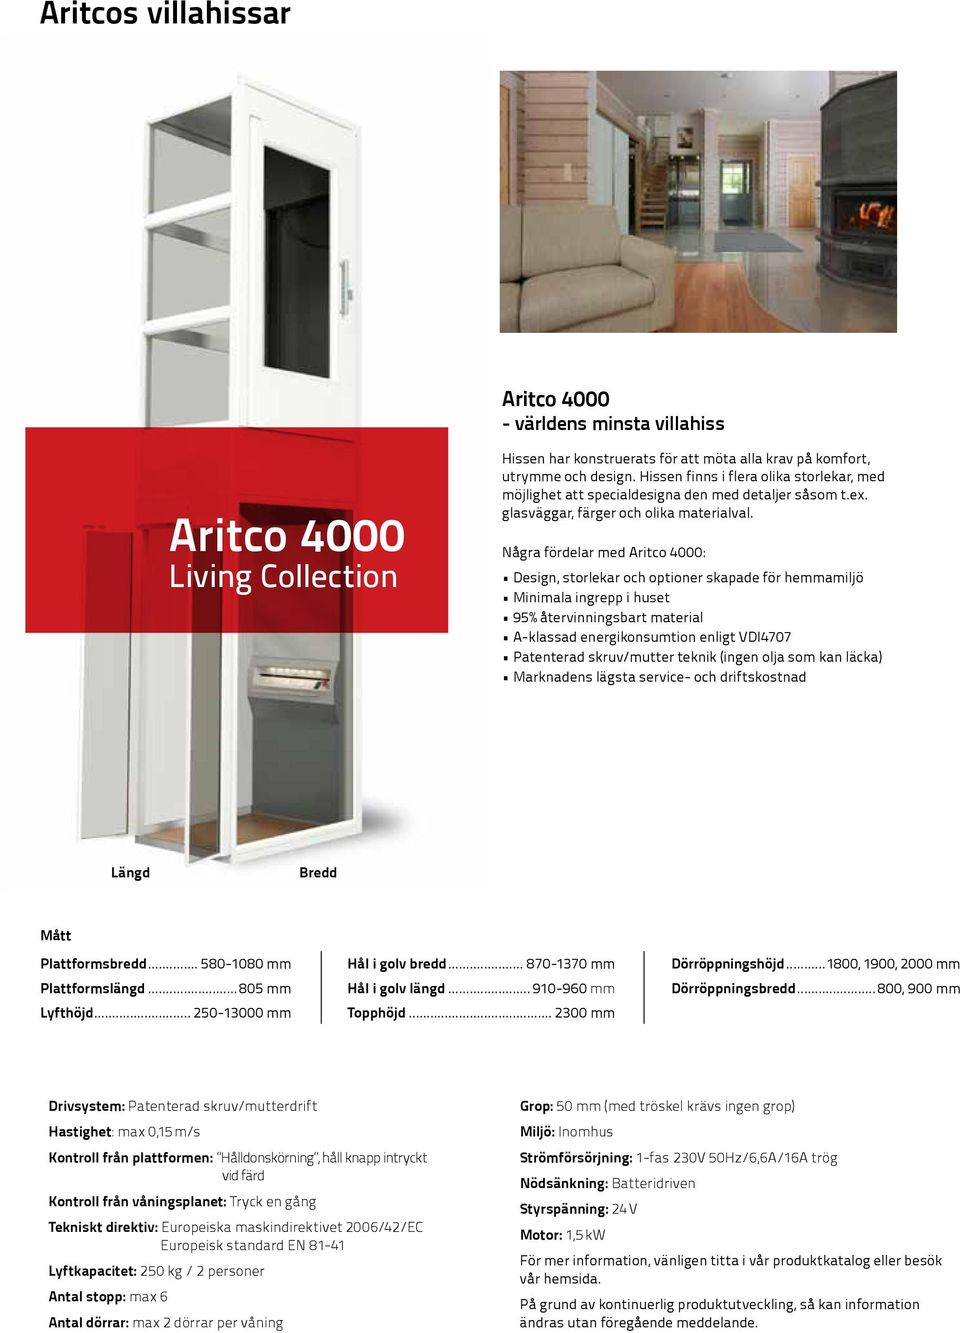 Några fördelar med Aritco 4000: Design, storlekar och optioner skapade för hemmamiljö Minimala ingrepp i huset 95% återvinningsbart material A-klassad energikonsumtion enligt VDI4707 Patenterad